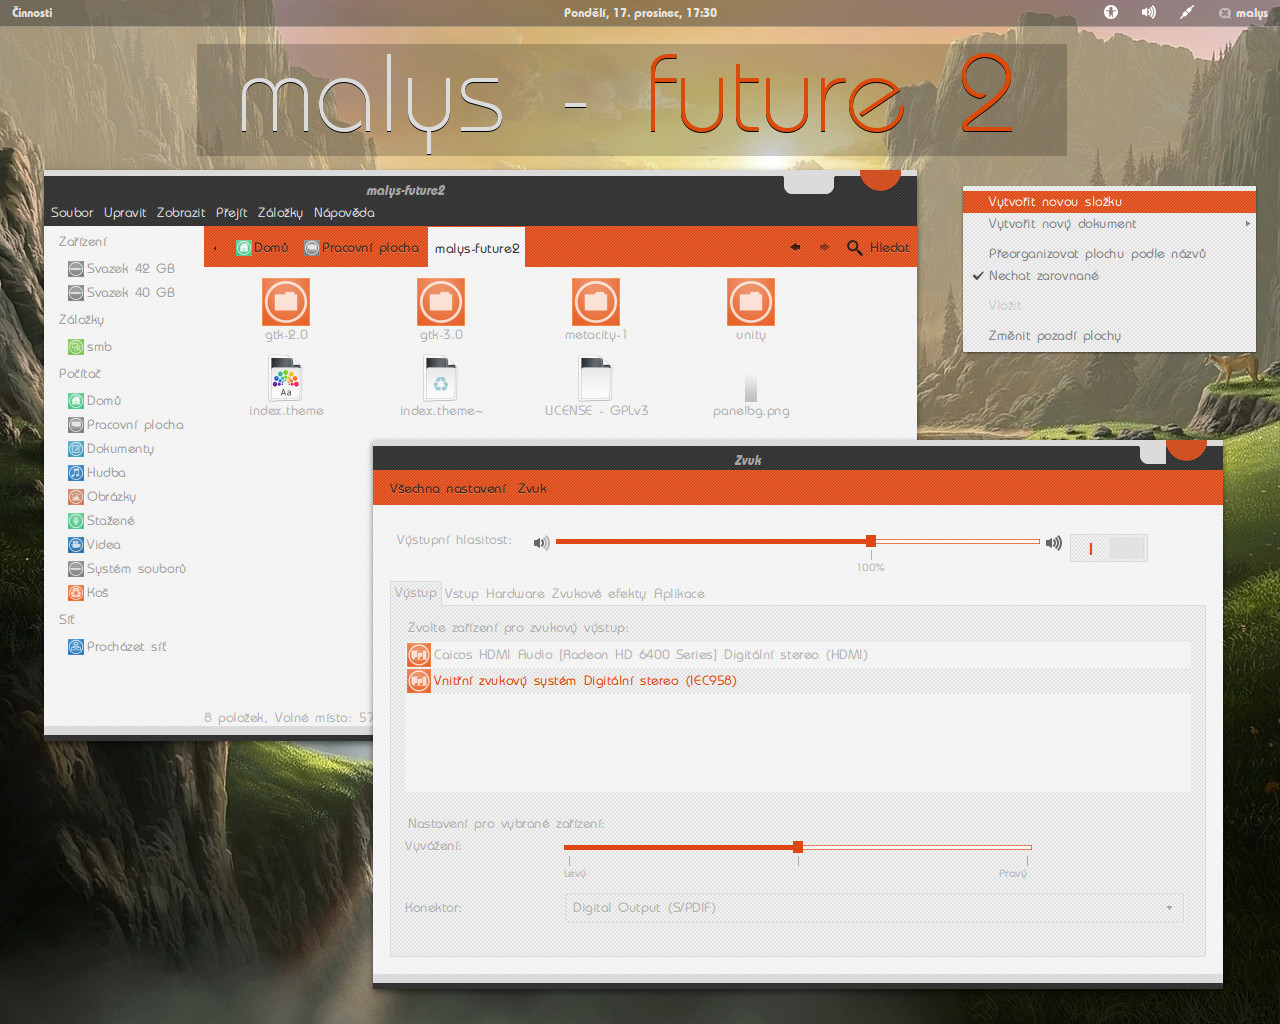 malys - future2 for GNOME 3.6